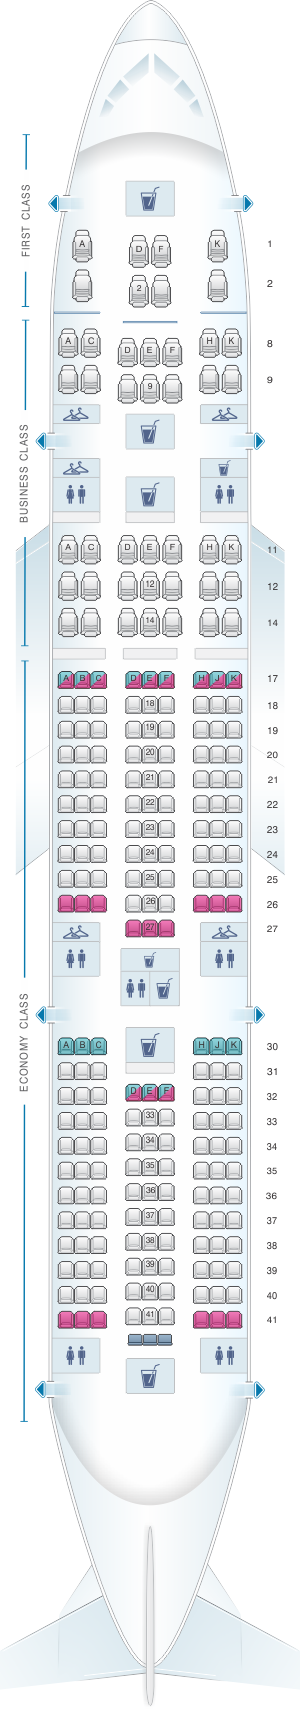 Seat Map Air India Boeing B777 200lr Seatmaestro